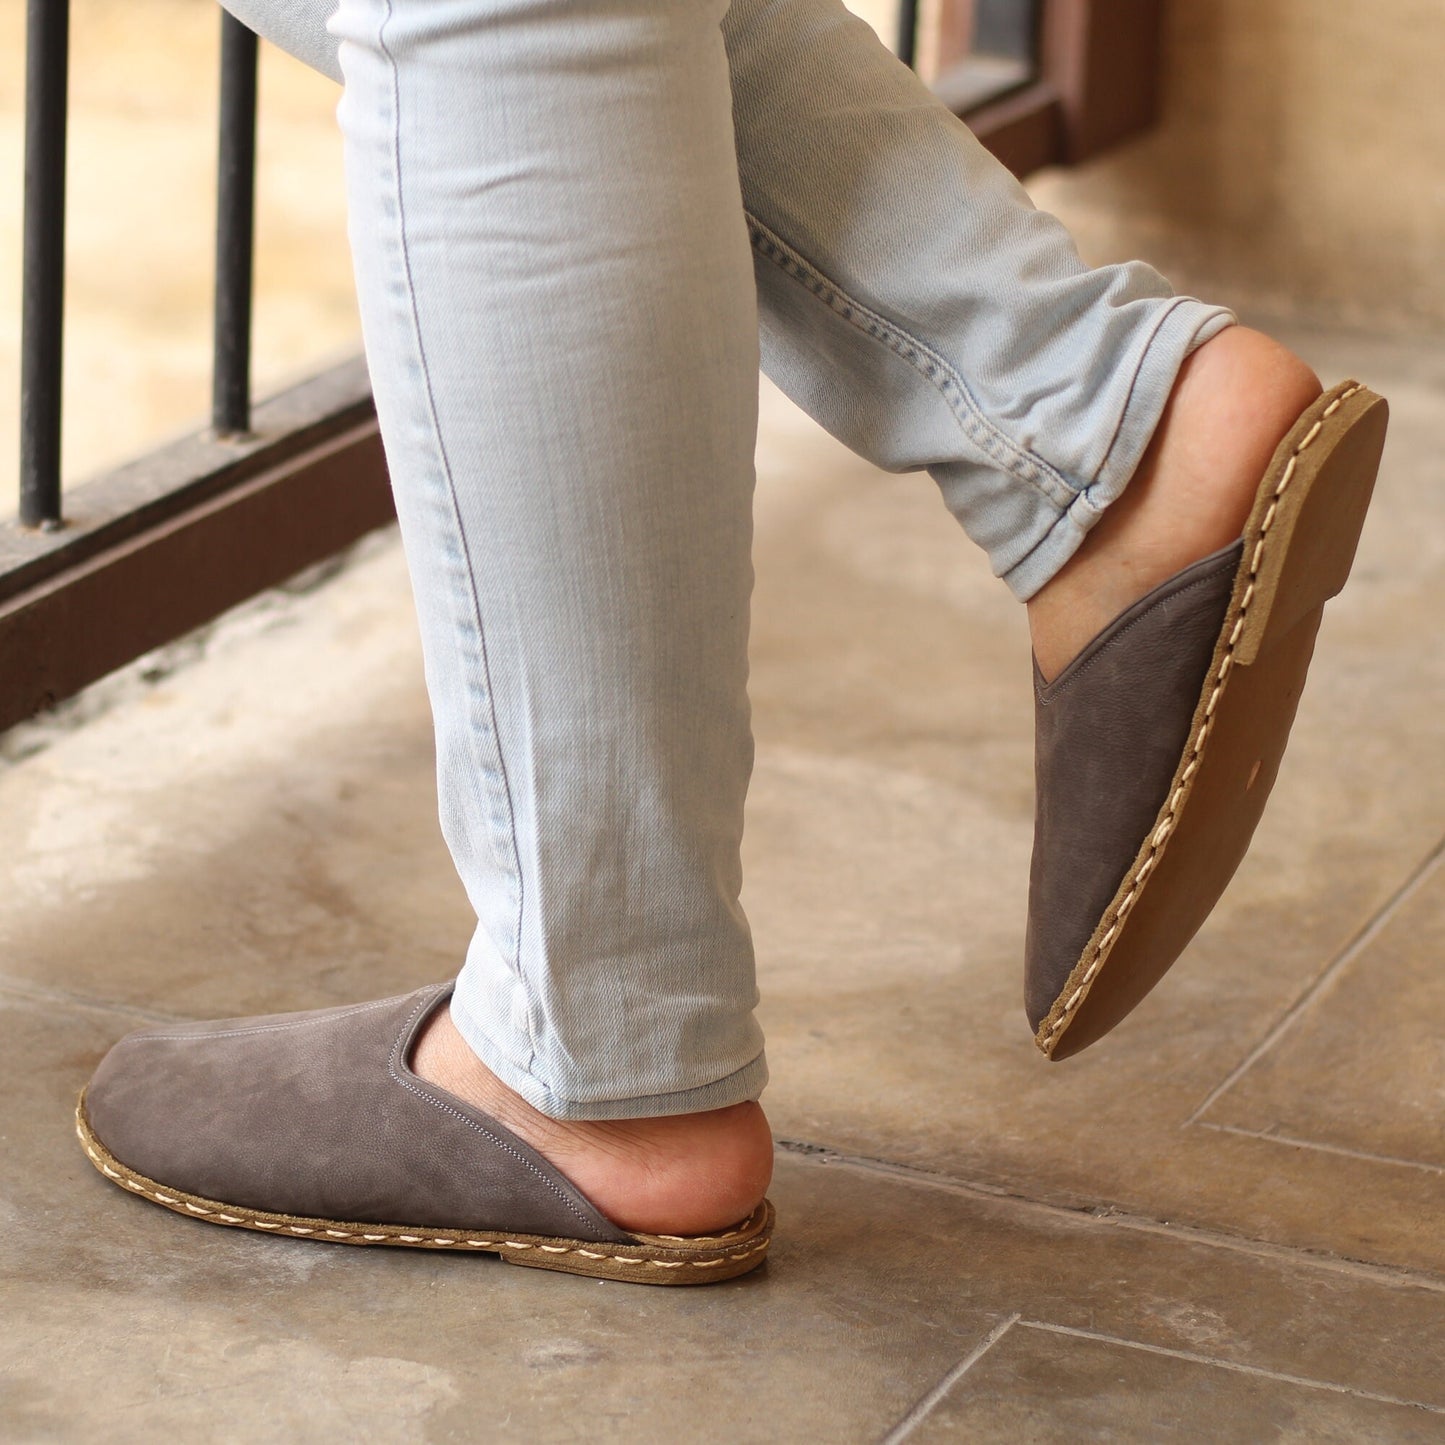 Sheepskin slippers - Winter Slippers - Barefoot Slipper - Close Toed Slippers - Gray Nubuck Leather - Copper Rivet - For Women